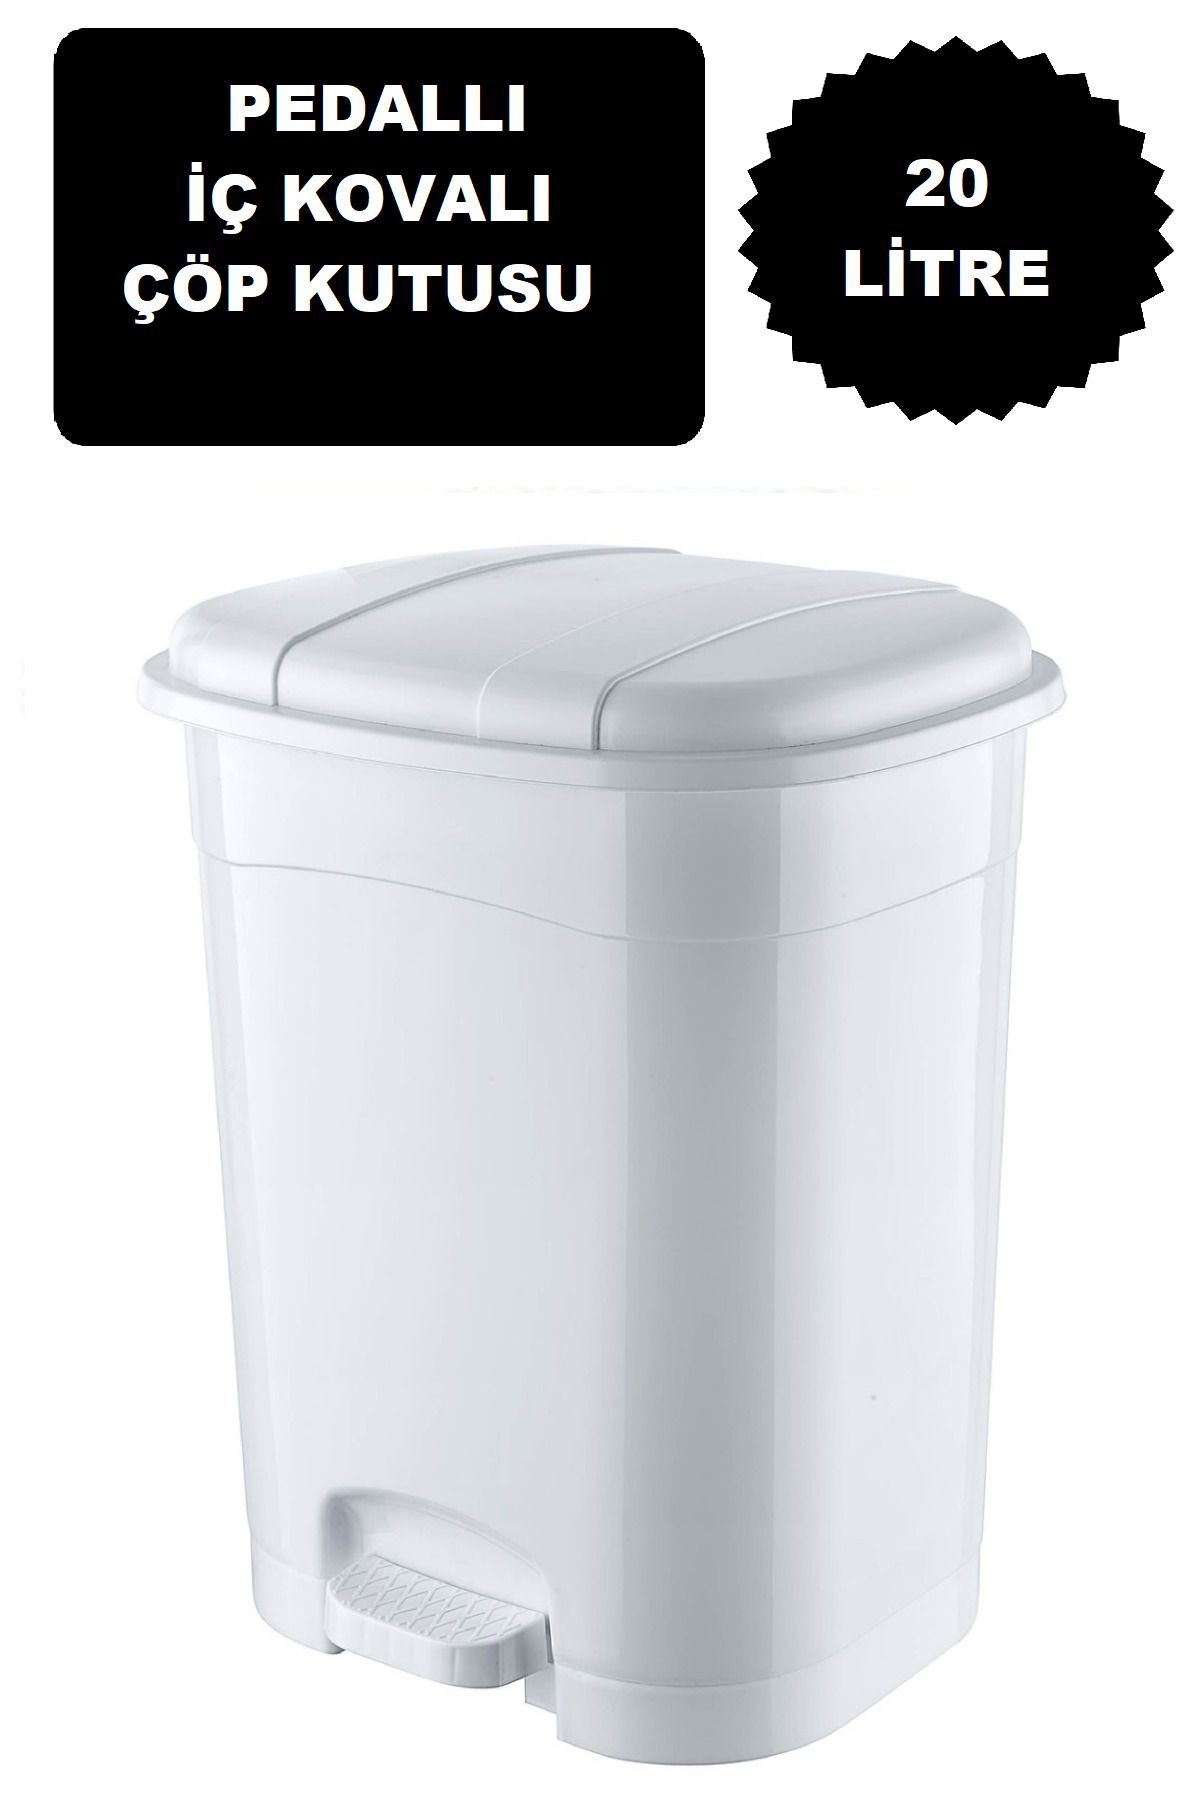 DEEMBRO Beyaz Büyük Boy Pedallı Çöp Kovası 20 Litre Iç Kovalı Mutfak Tezgah Üstü, Banyo Ve Ofis Çöp Kovası